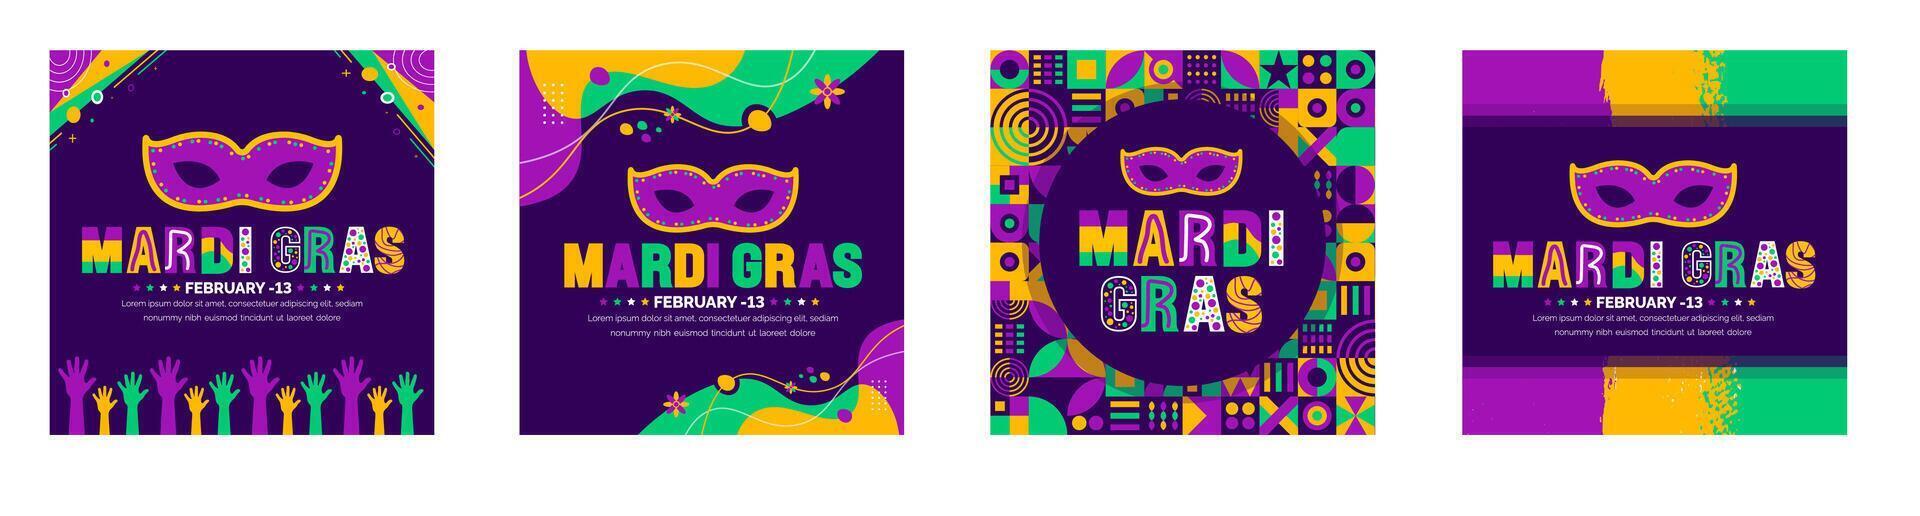 mardi gras carnaval dentro Novo orleans social meios de comunicação postar bandeira Projeto modelo conjunto com carnaval mascarar. mardi gras refere para eventos do a carnaval celebração fundo Projeto modelo. vetor